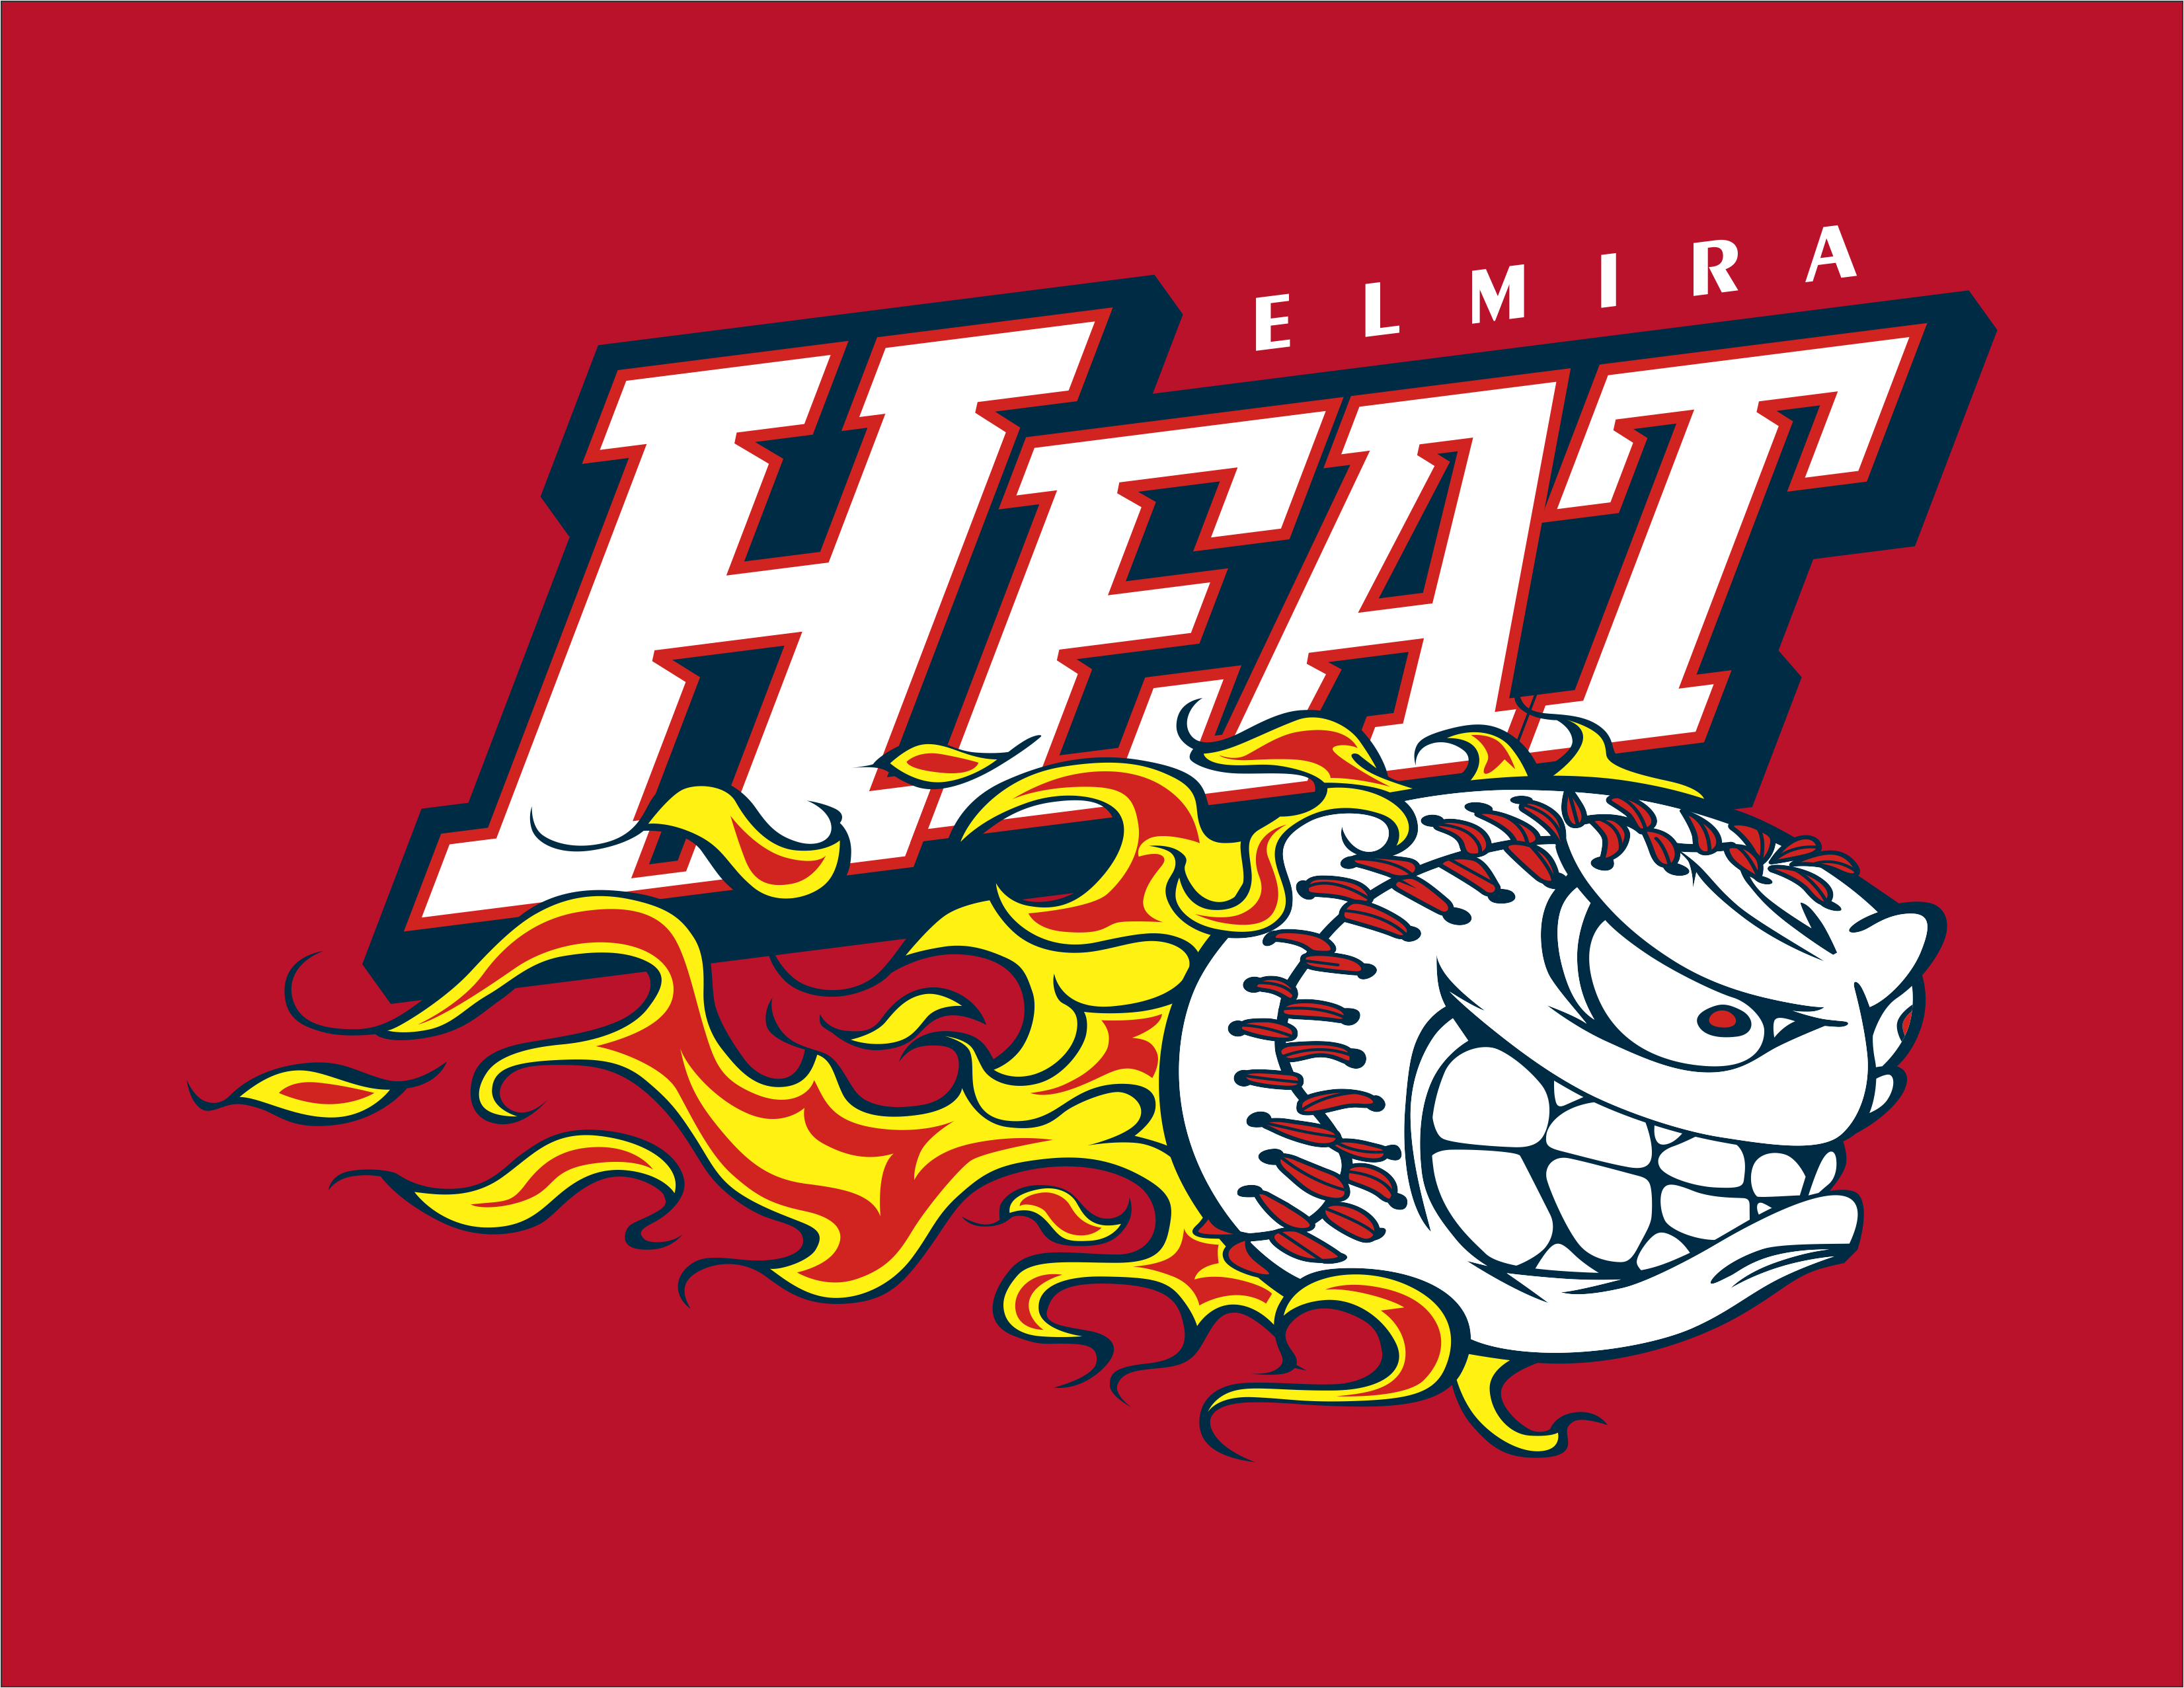 Elmira Heat